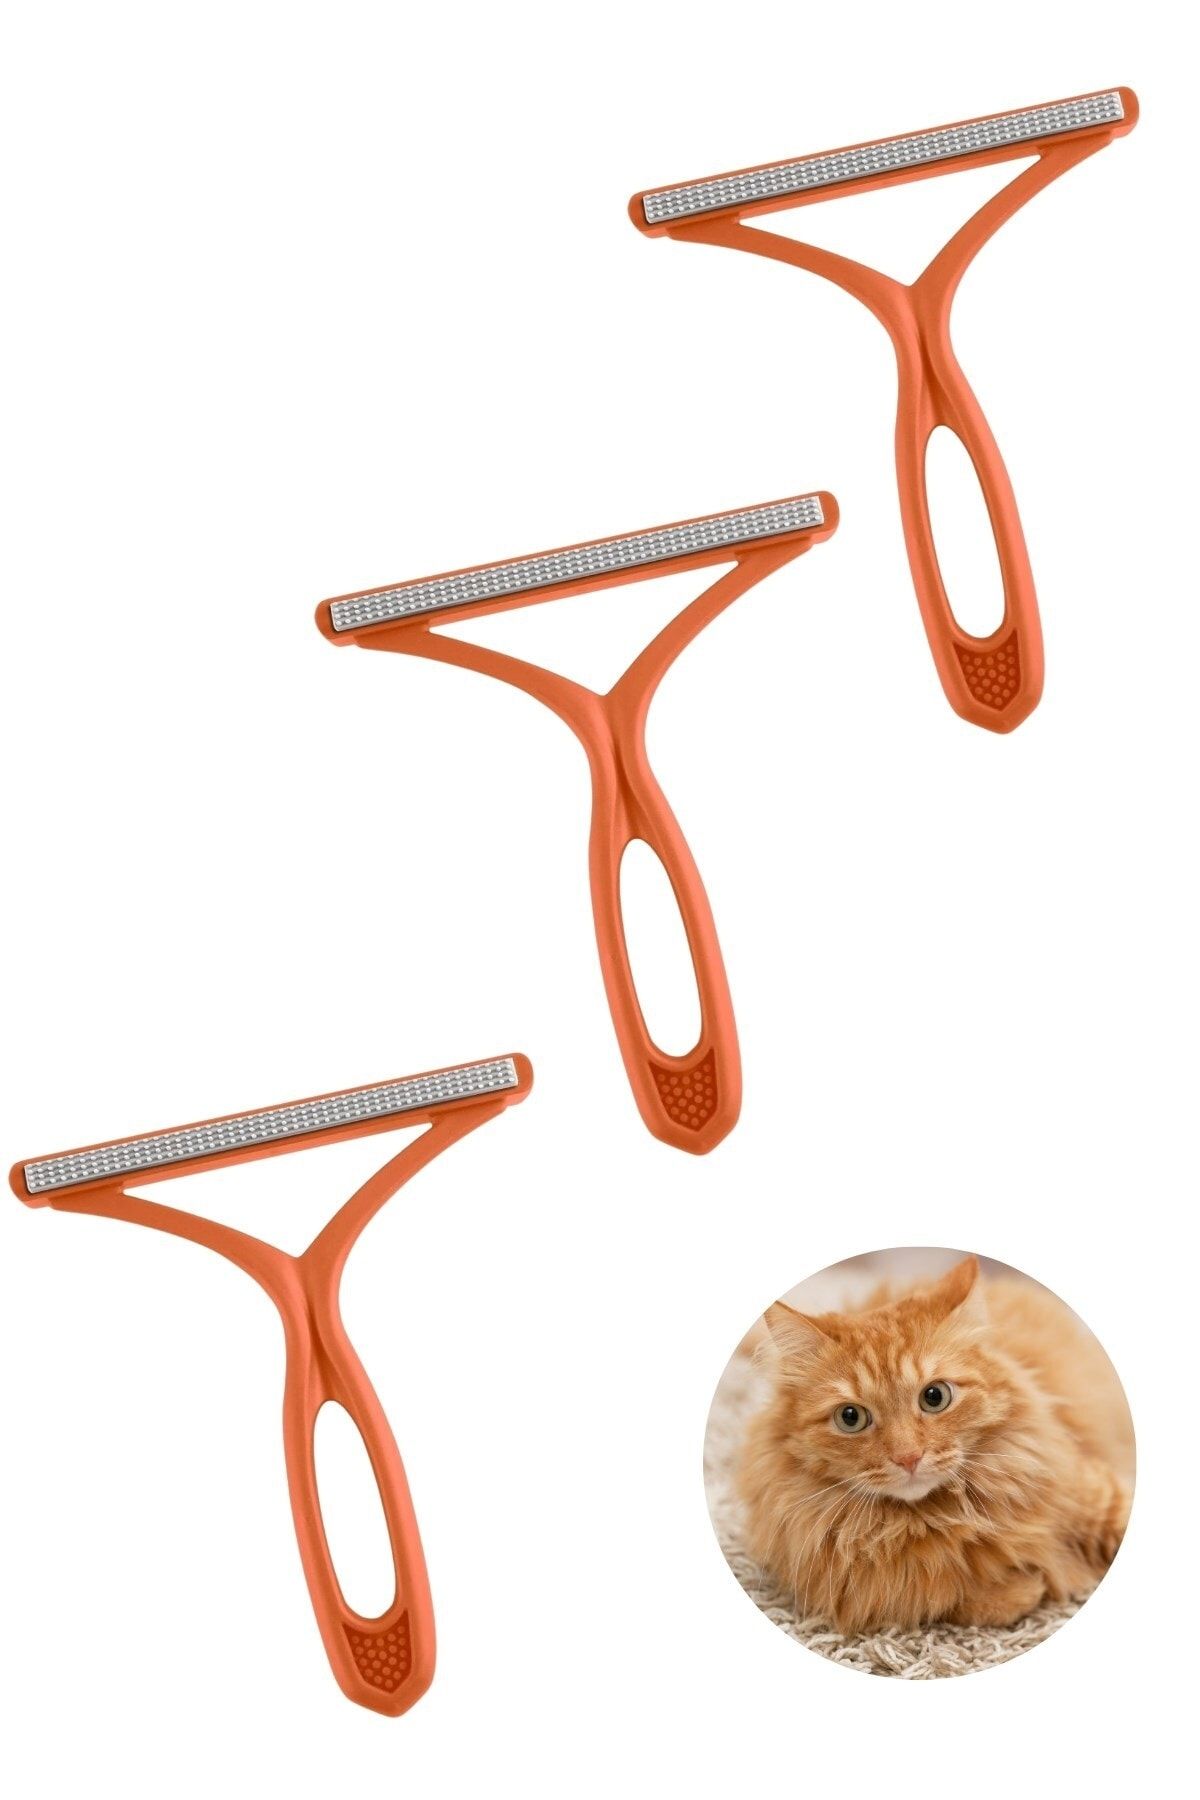 Buffer ® 3 Adet Kedi Köpek Tüy Toplayıcı Çift Taraflı Pamuk Tiftiği Ve Tüy Toplama Fırçası